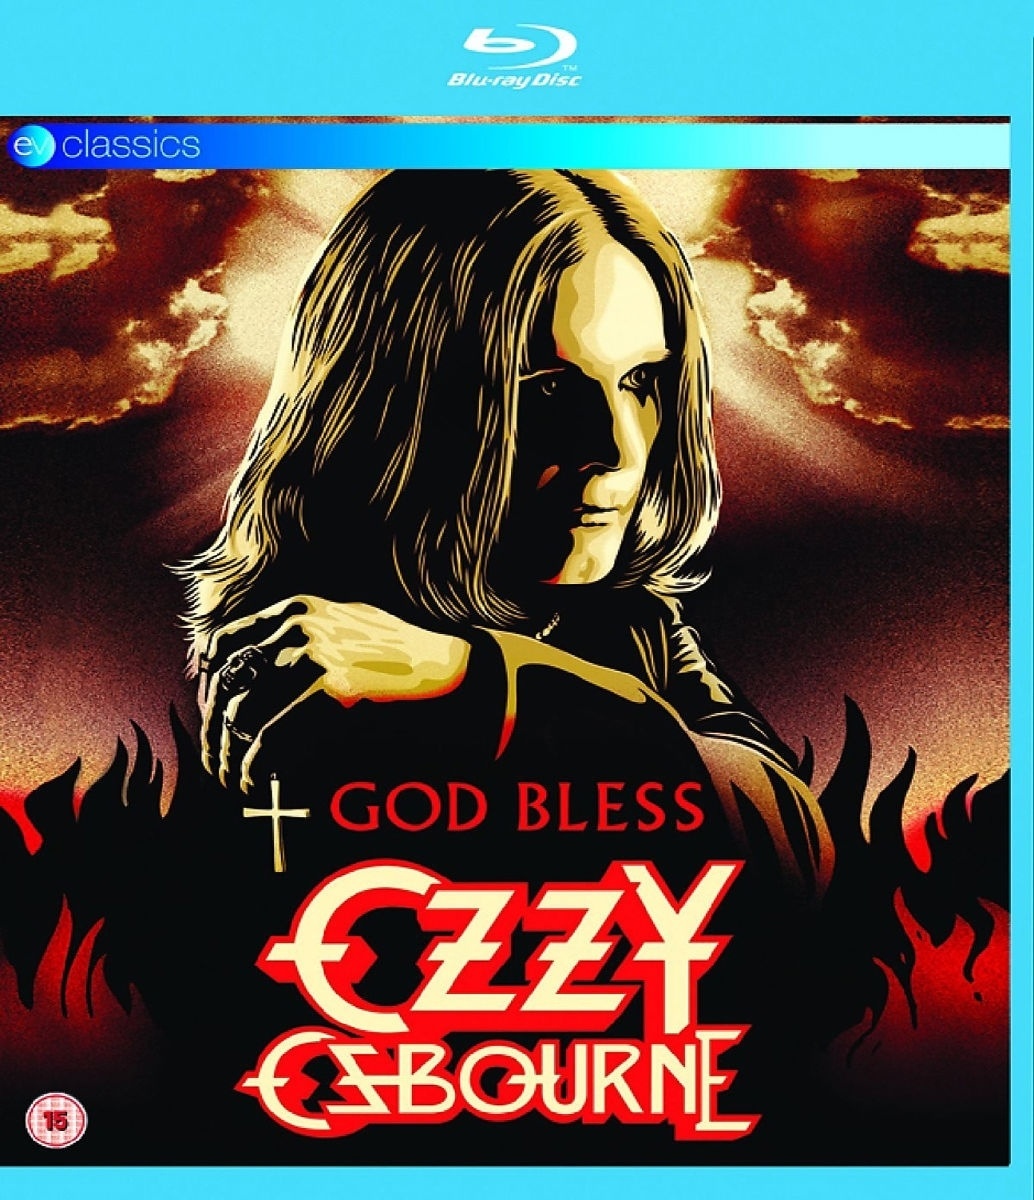 God Bless Ozzy Osbourne - Ozzy Osbourne. (Blu-ray Disc)